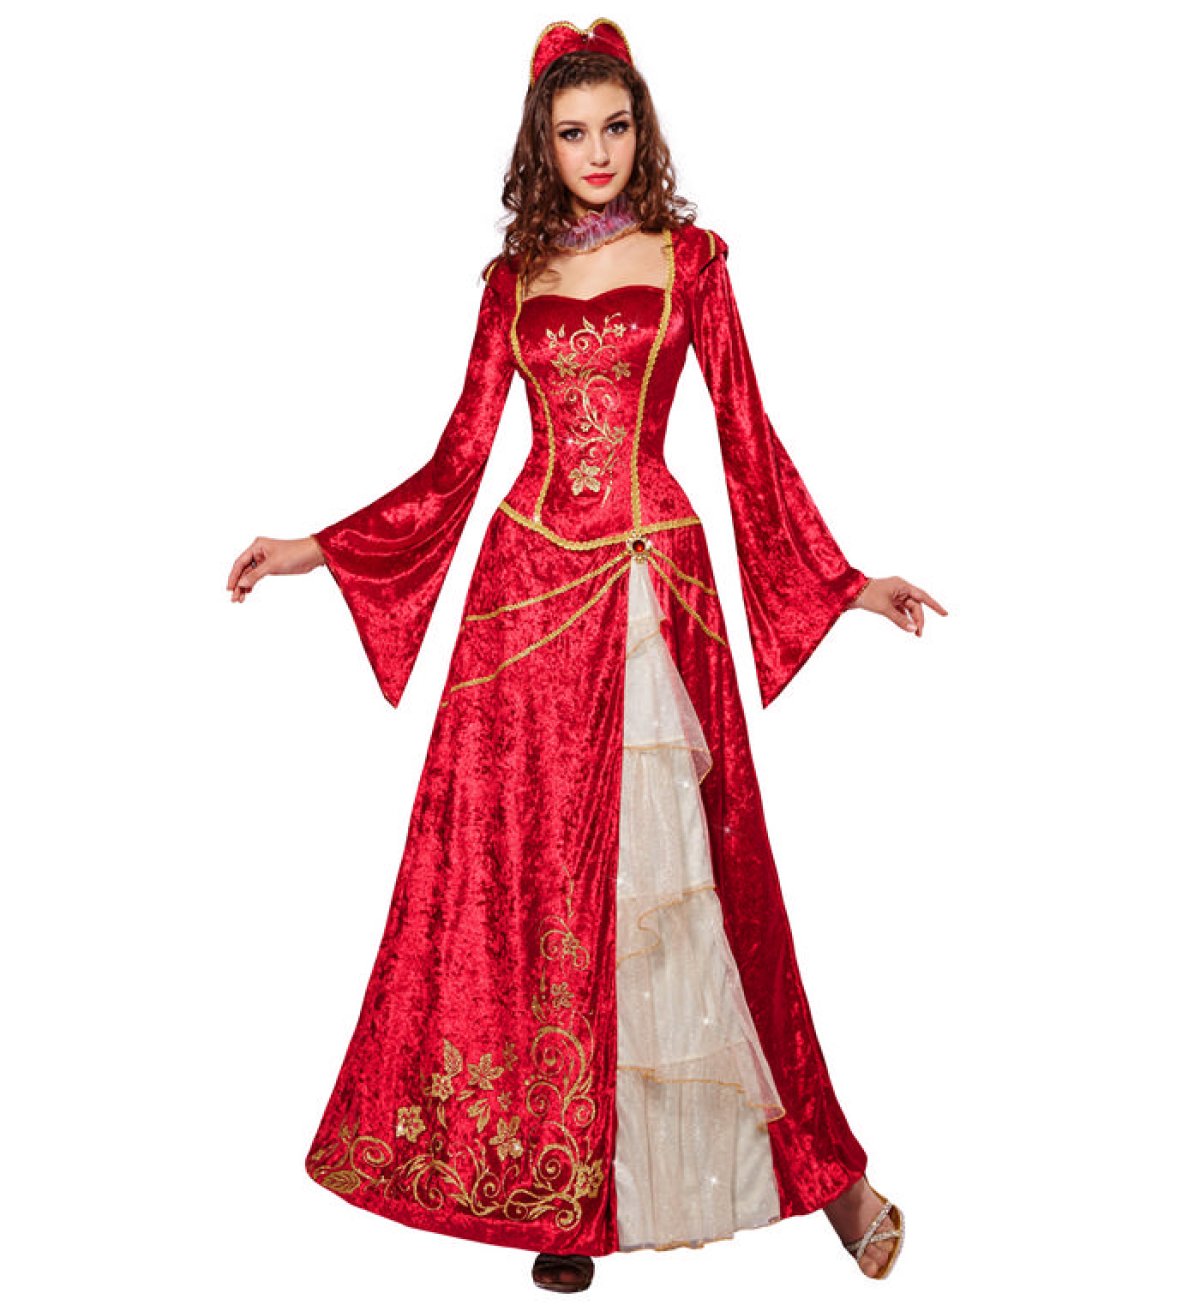 Køb Renæssance Prinsesse Kostume til 349 kr |